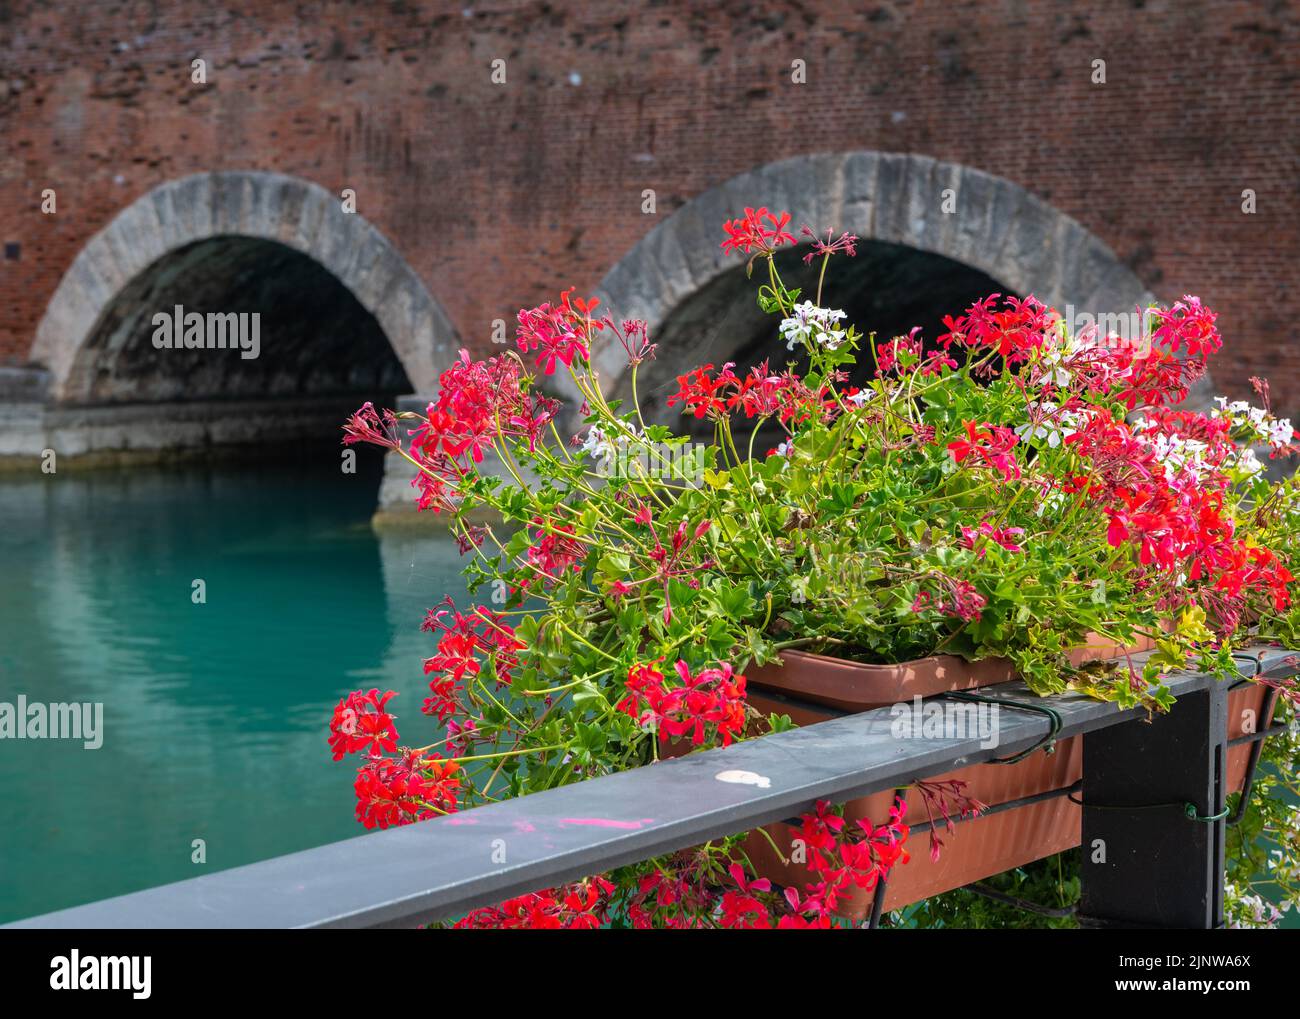 Il ponte Voltoni. Peschiera del Garda, provincia di Verona, Veneto, Italia settentrionale, Europa. Foto Stock